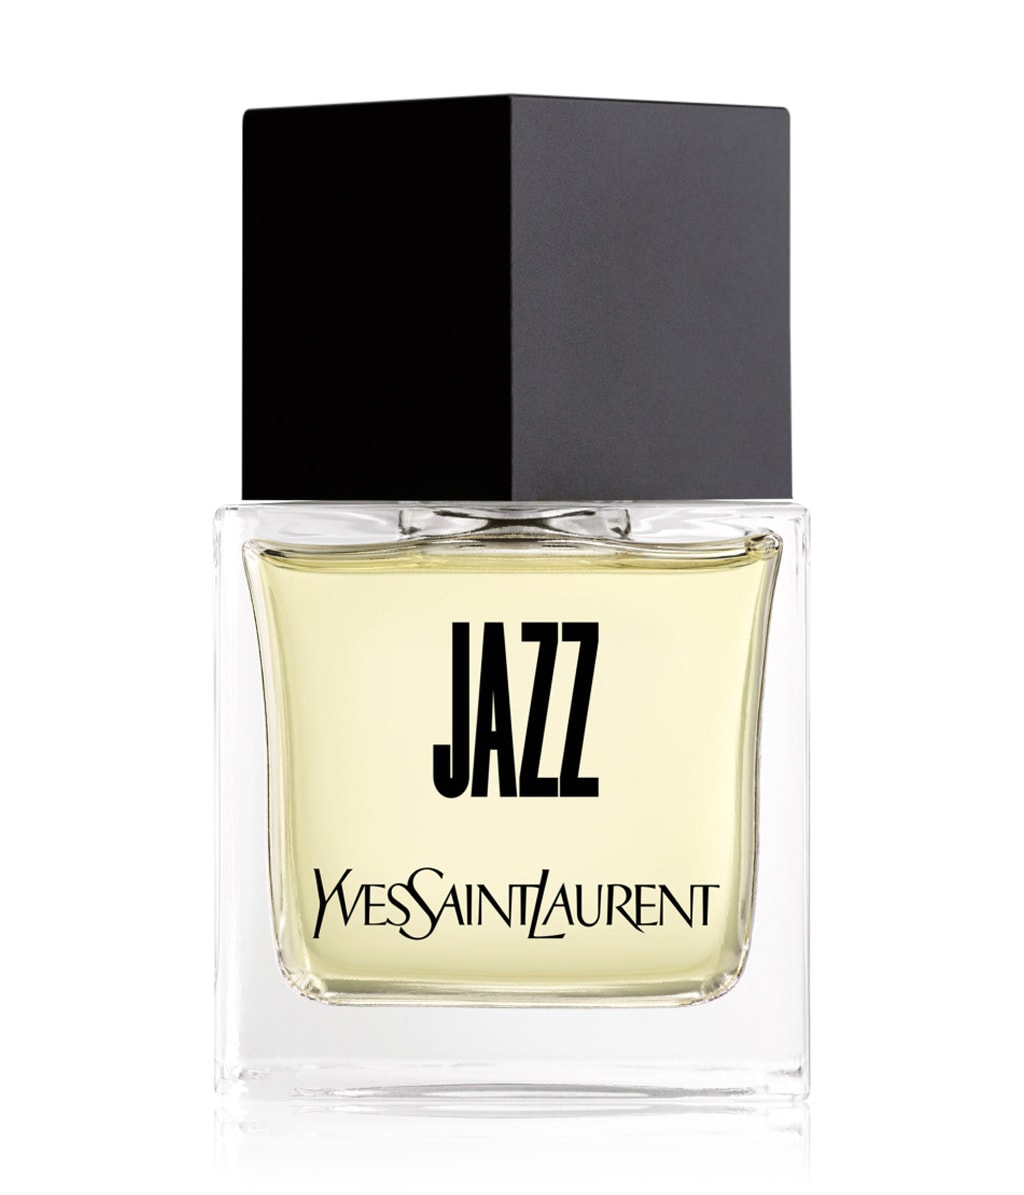 Yves Saint Laurent Jazz Eau de Toilette bestellen | flaconi